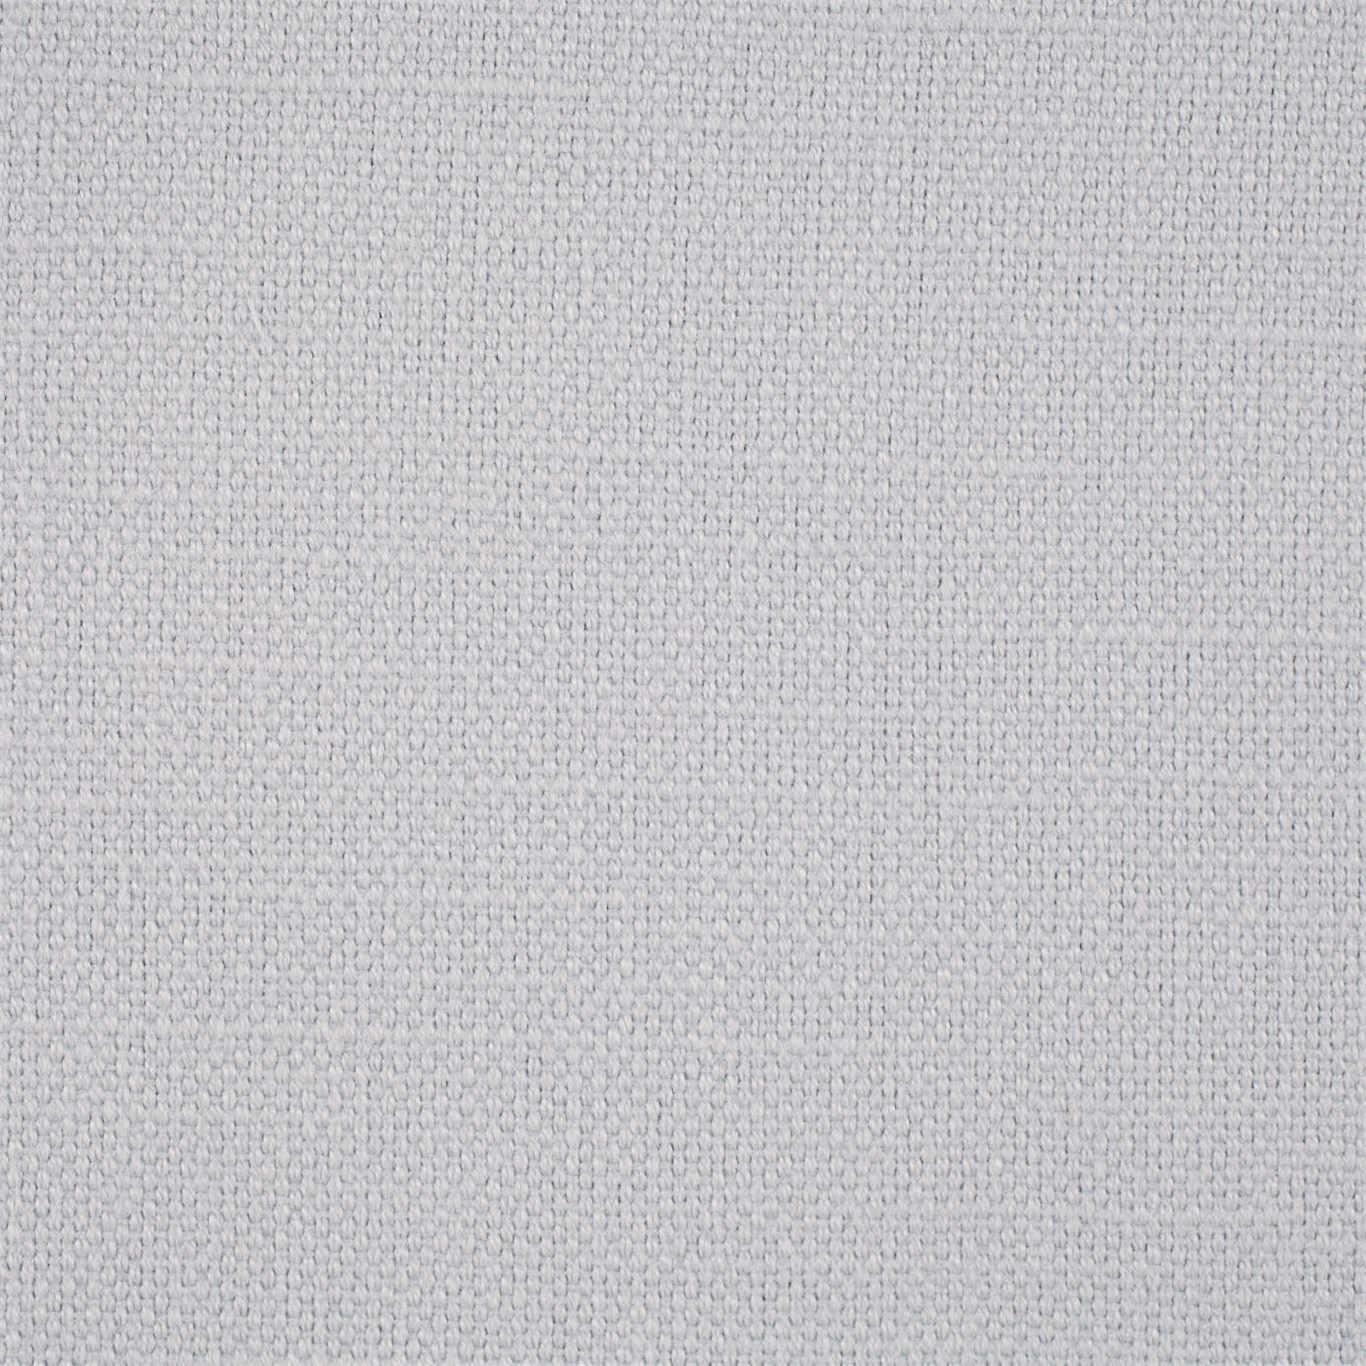 Arley Silver Fabric by SAN